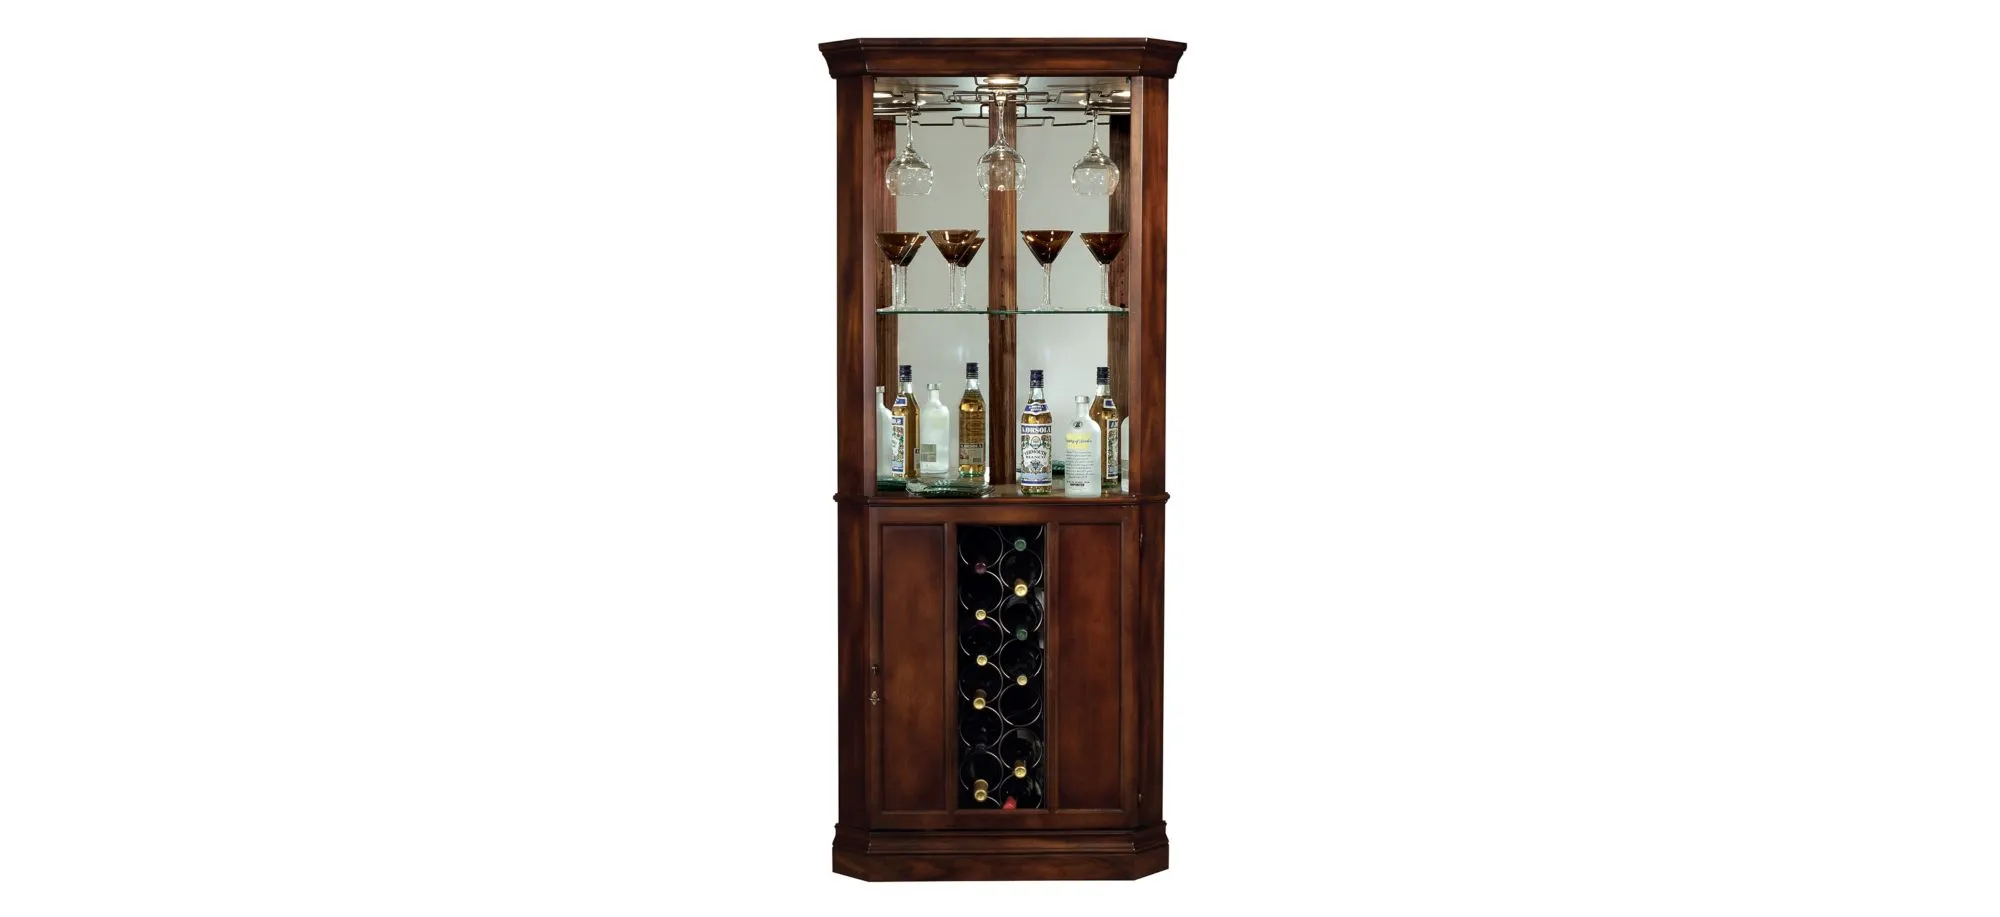 Piedmont Corner Wine Cabinet in Rustic Cherry by Howard Miller Clock